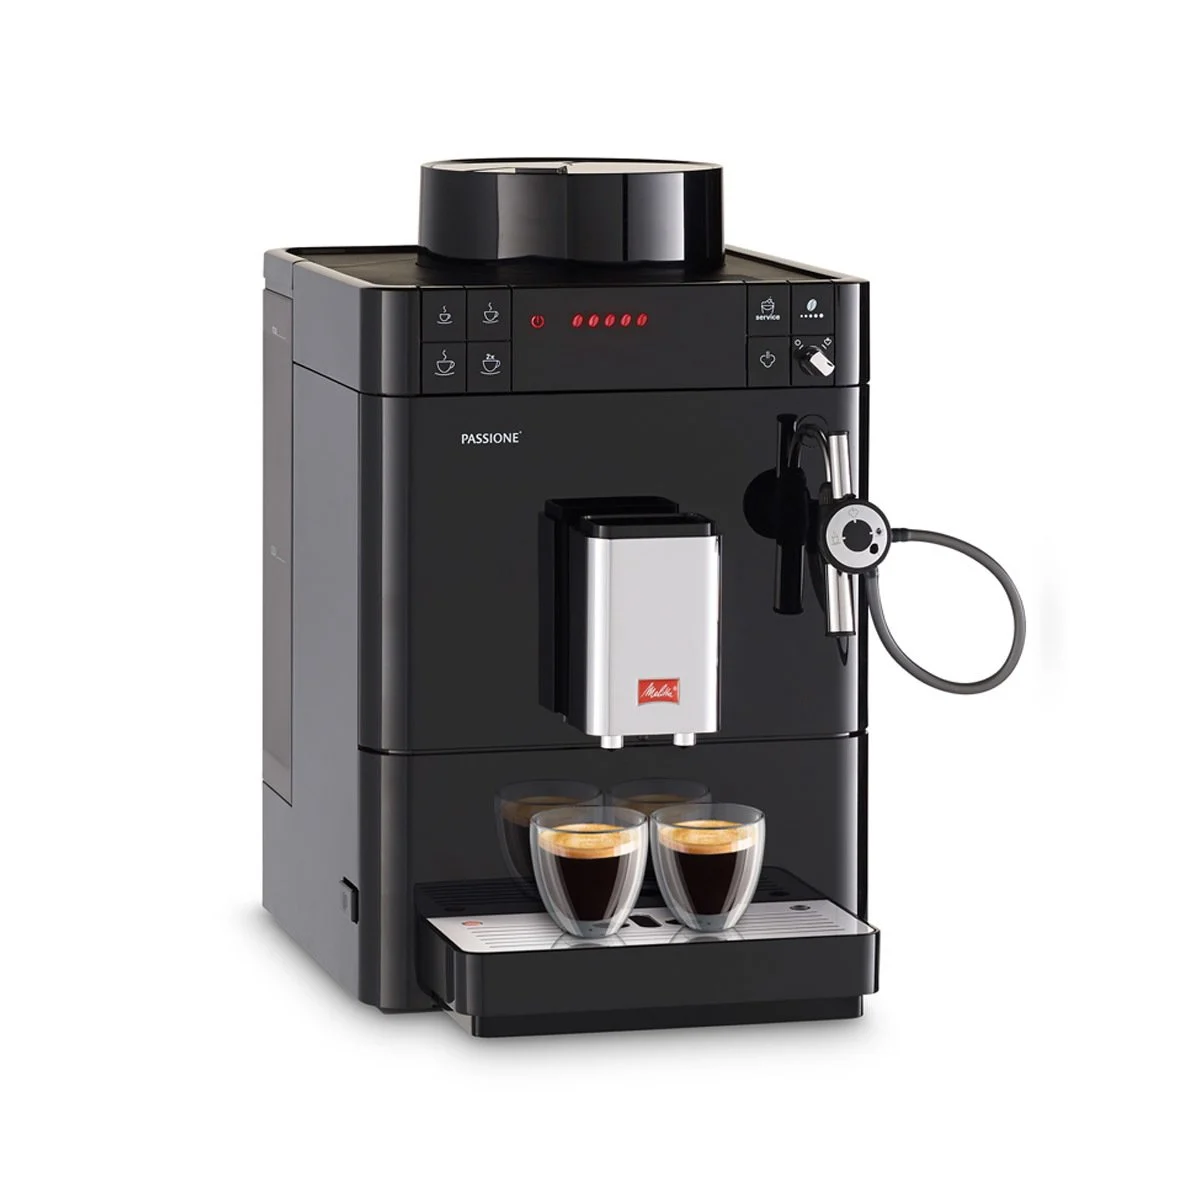 Melitta Caffeo Passione Tam Otomatik Kahve Makinesi Siyah